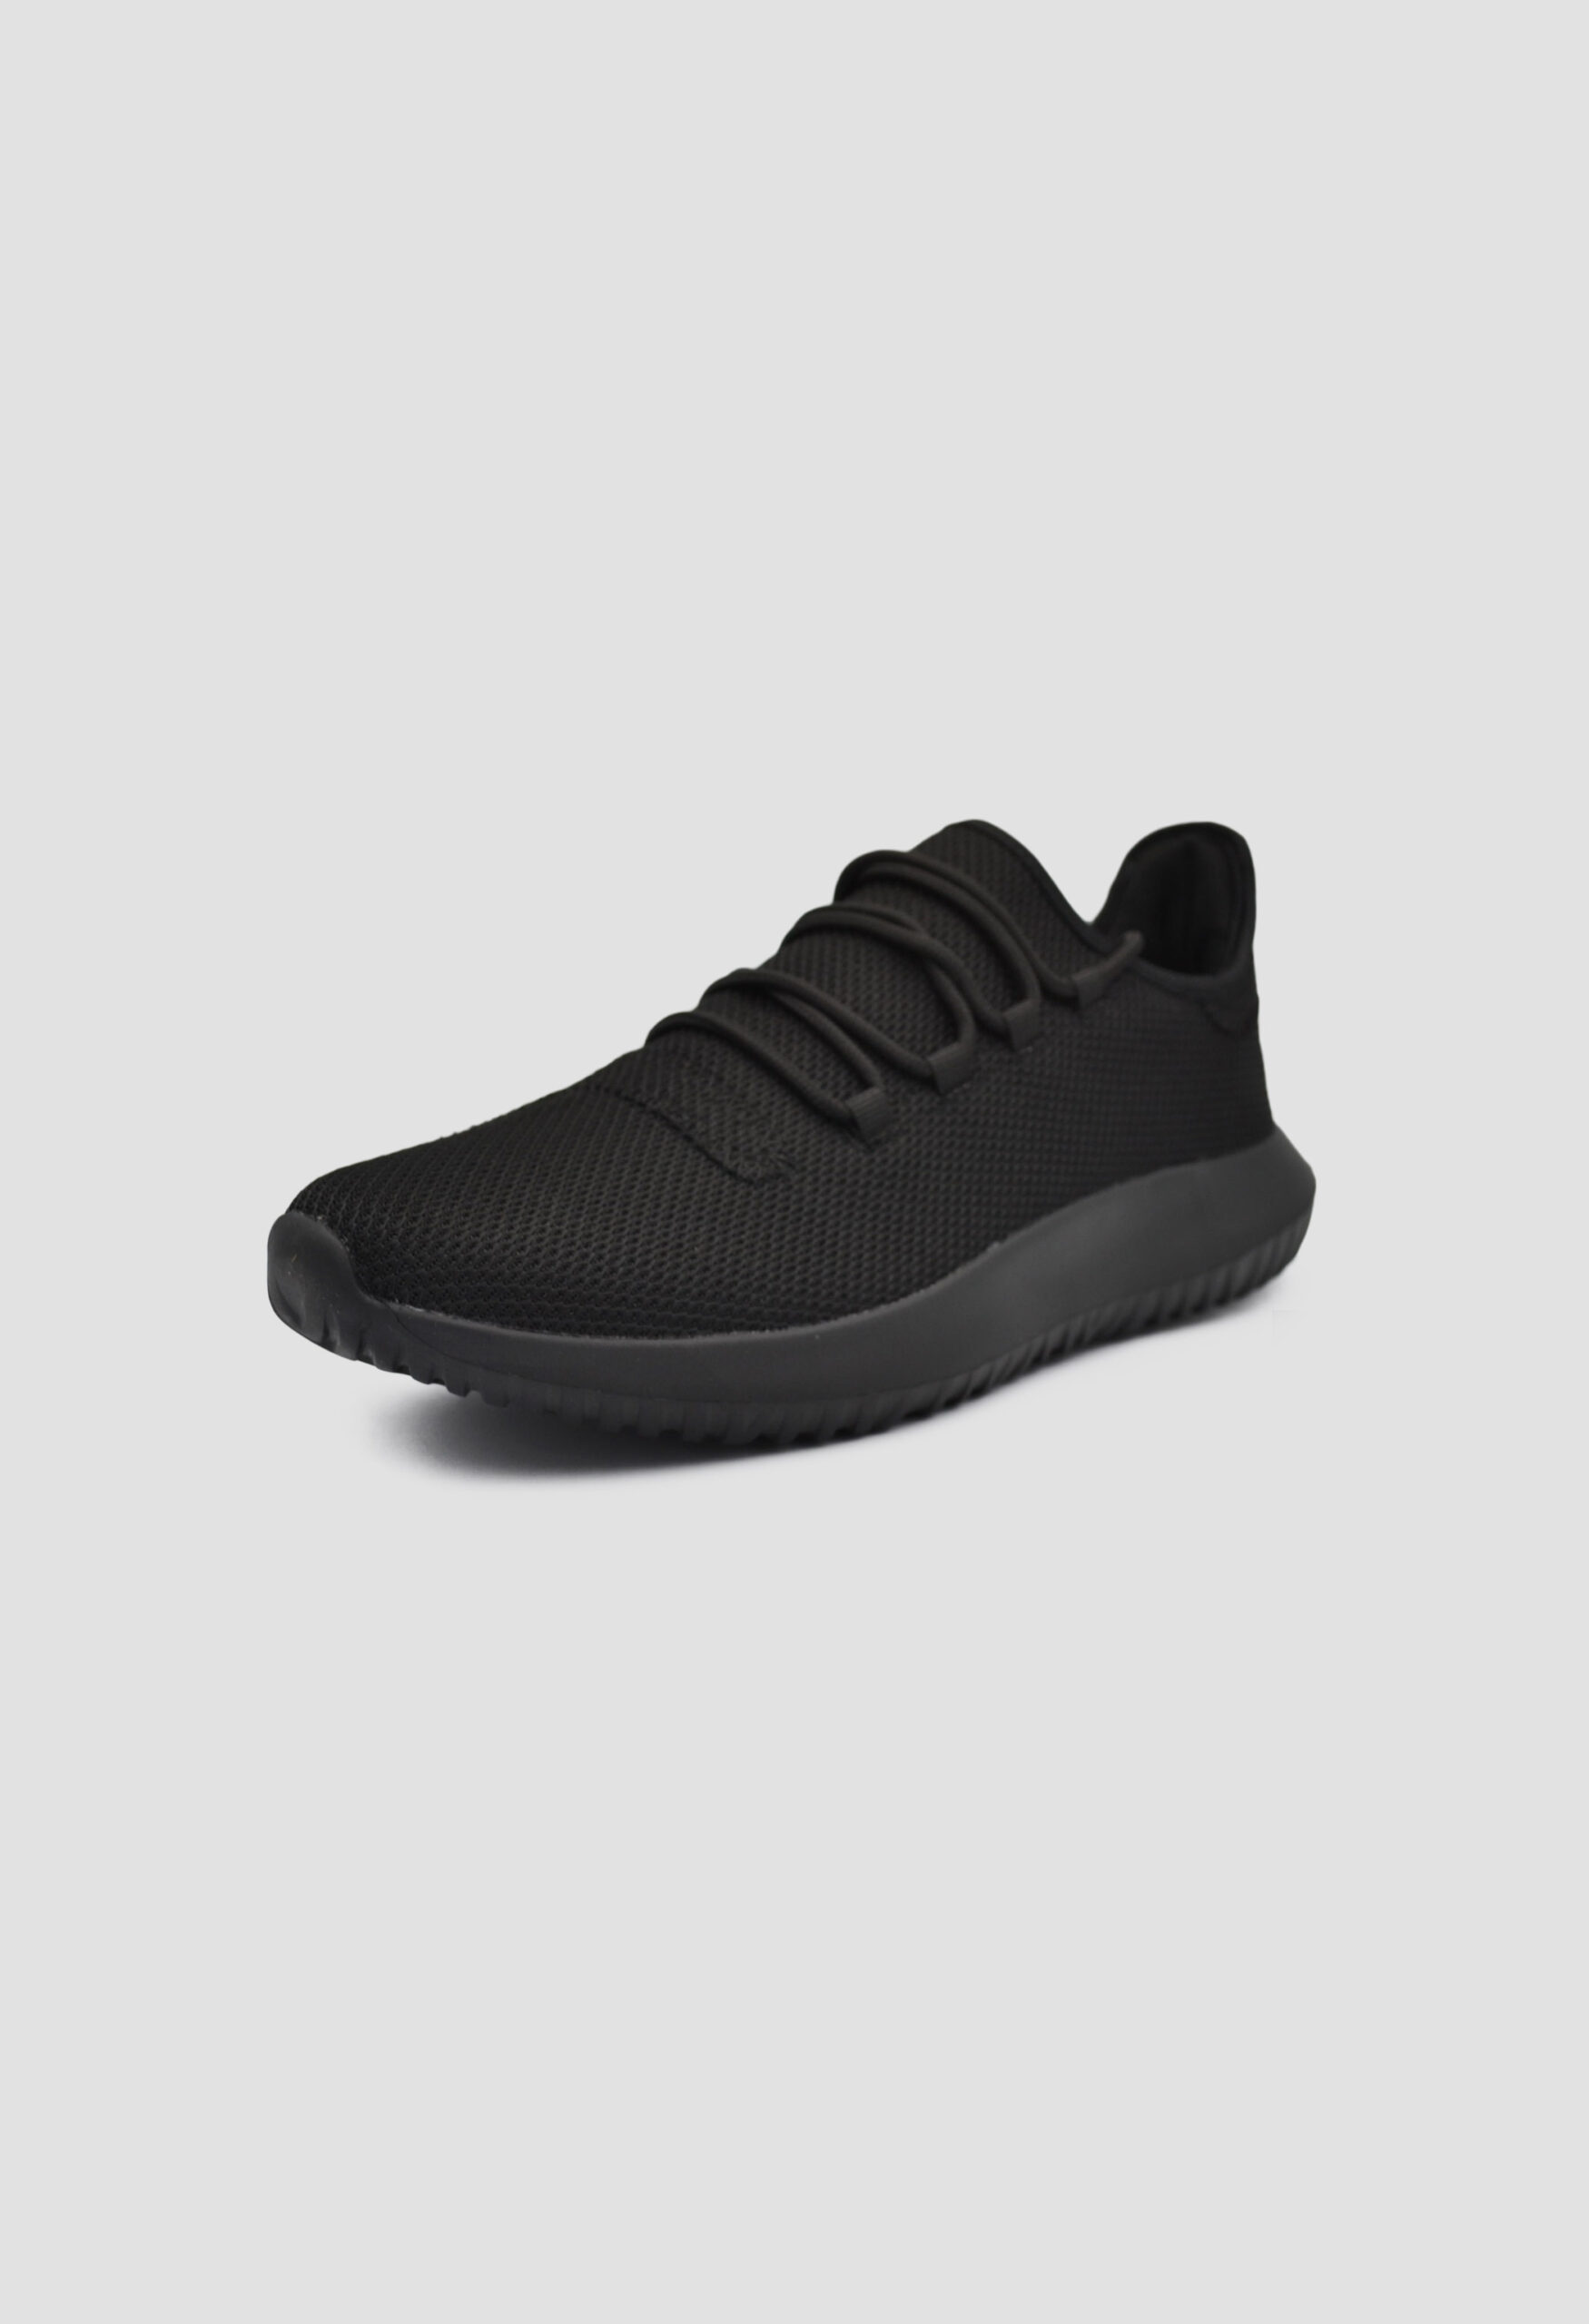 Ανδρικά Αθλητικά Παπούτσια για Τρέξιμο Μαύρο / M-871066-black ΑΘΛΗΤΙΚΑ & SNEAKERS joya.gr